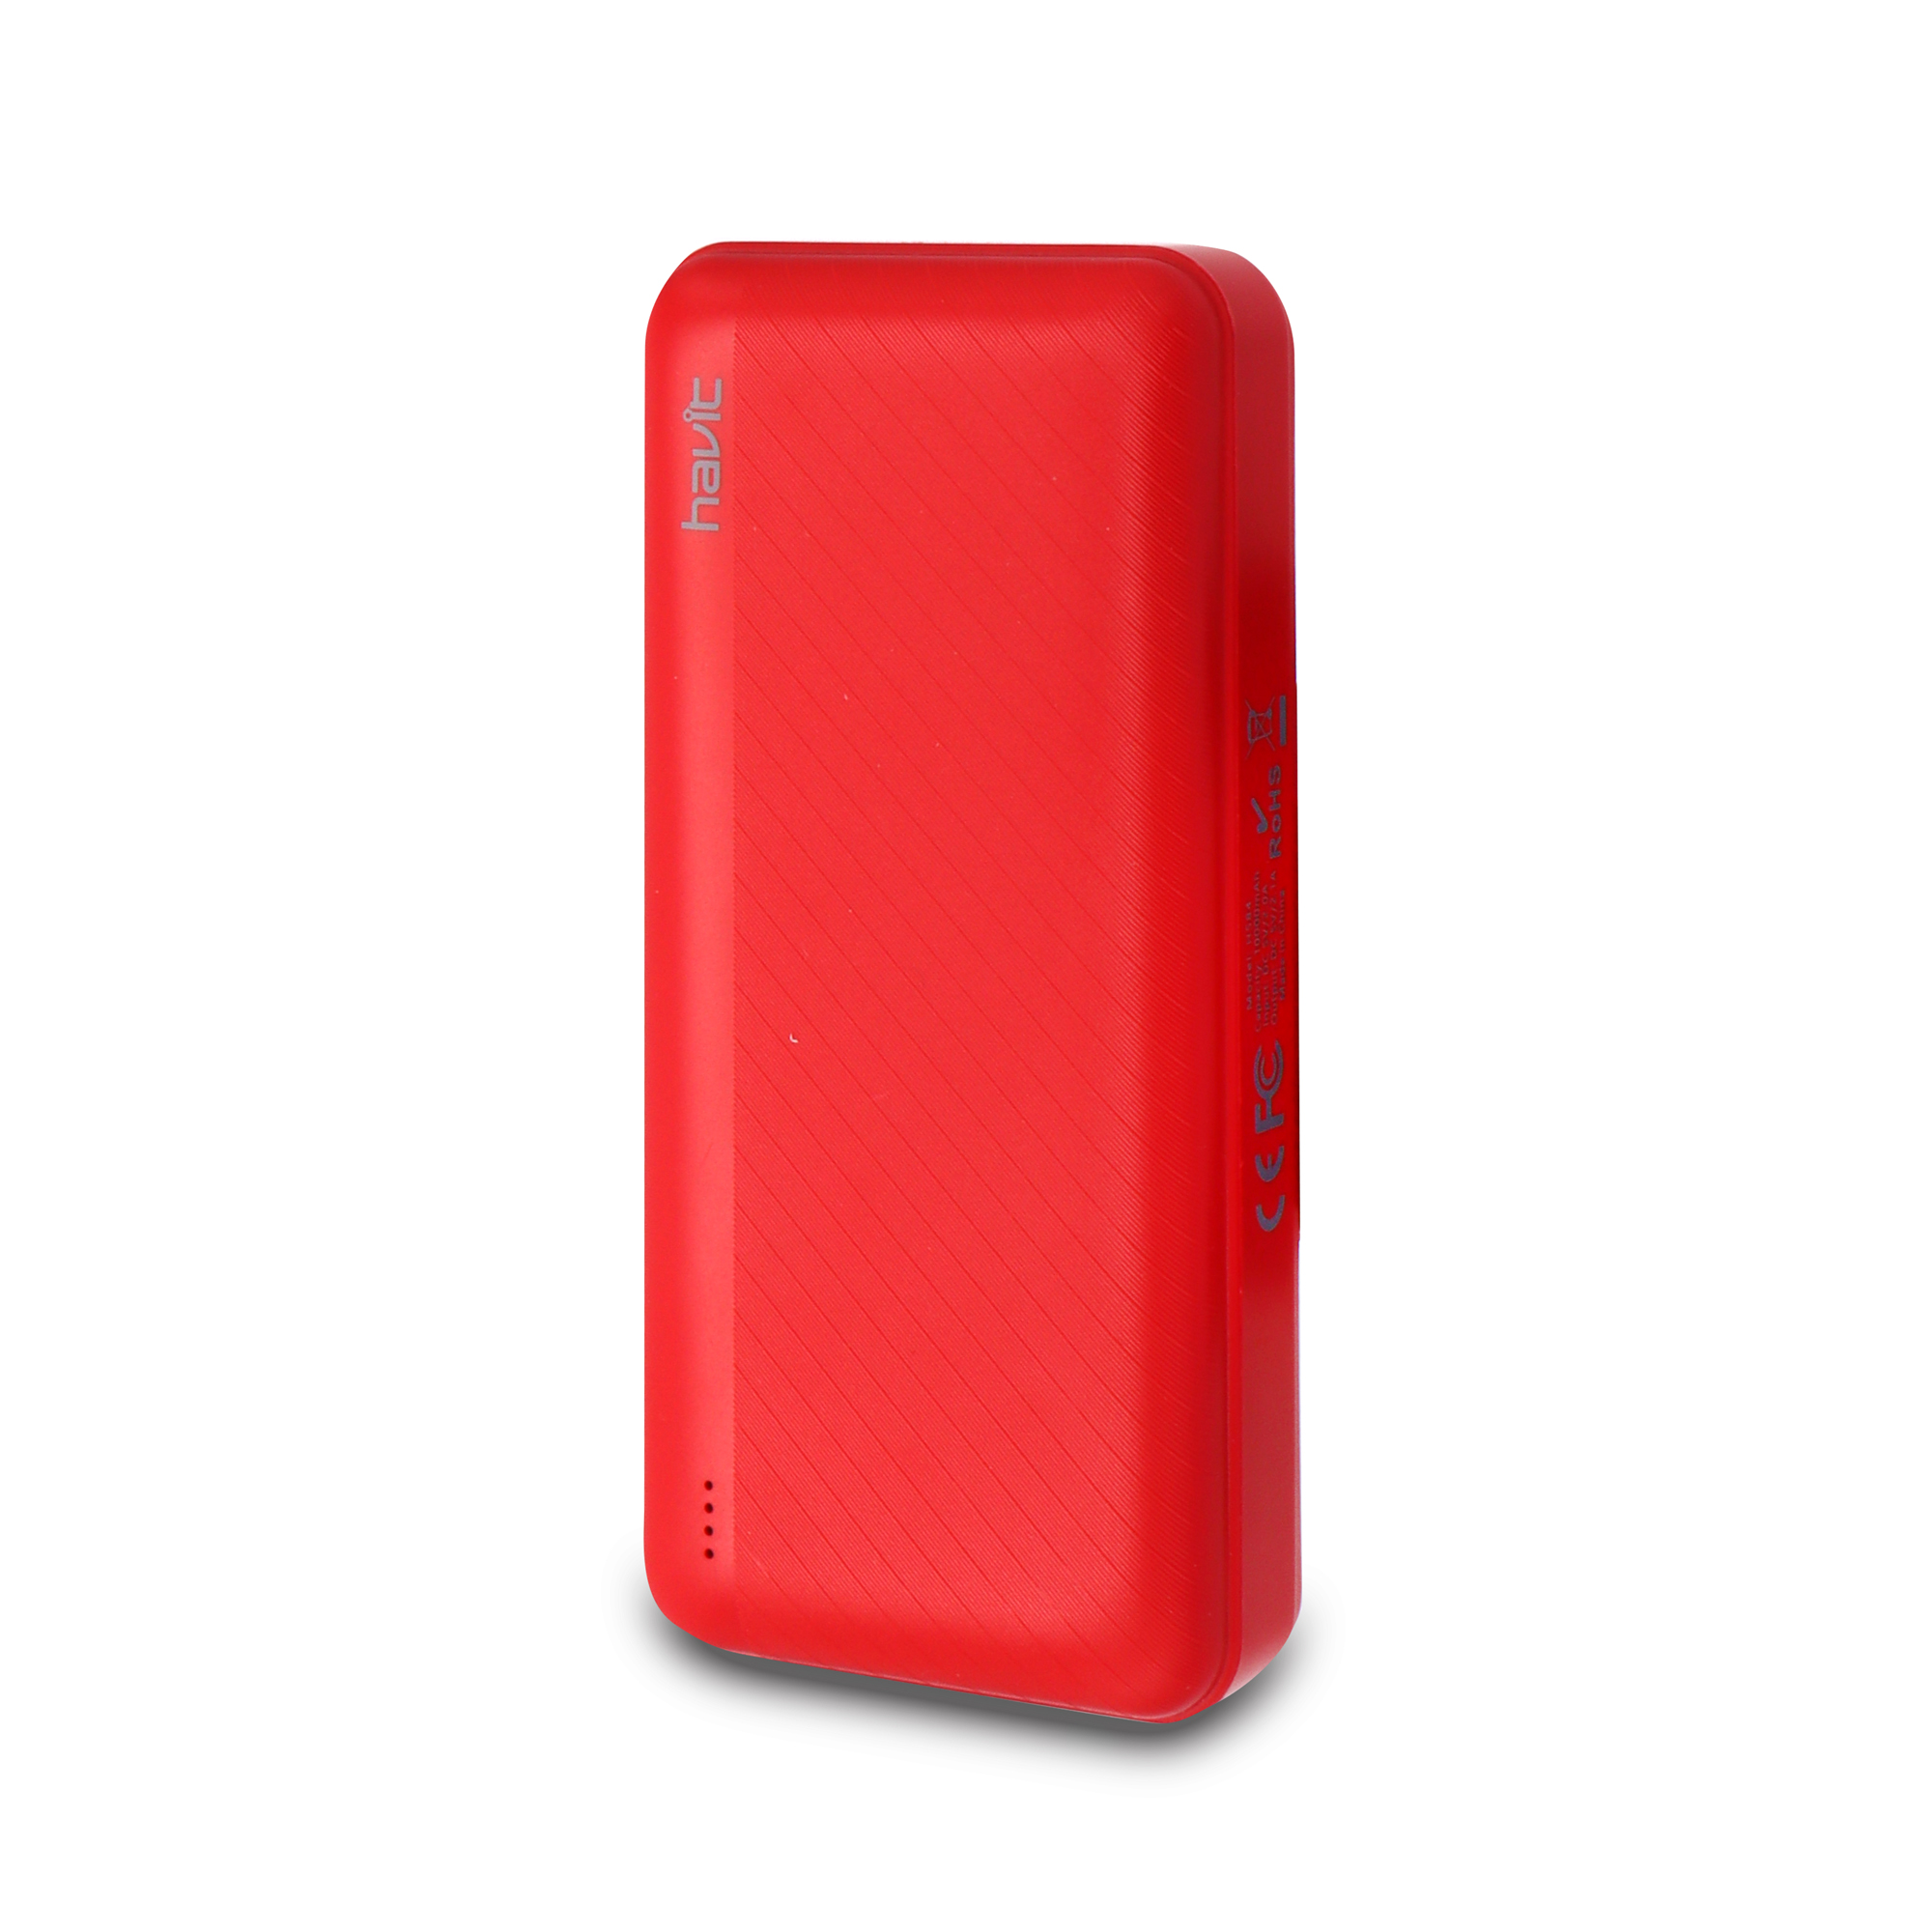 Bateria Externa Dual USB 10000mah H584 Roja